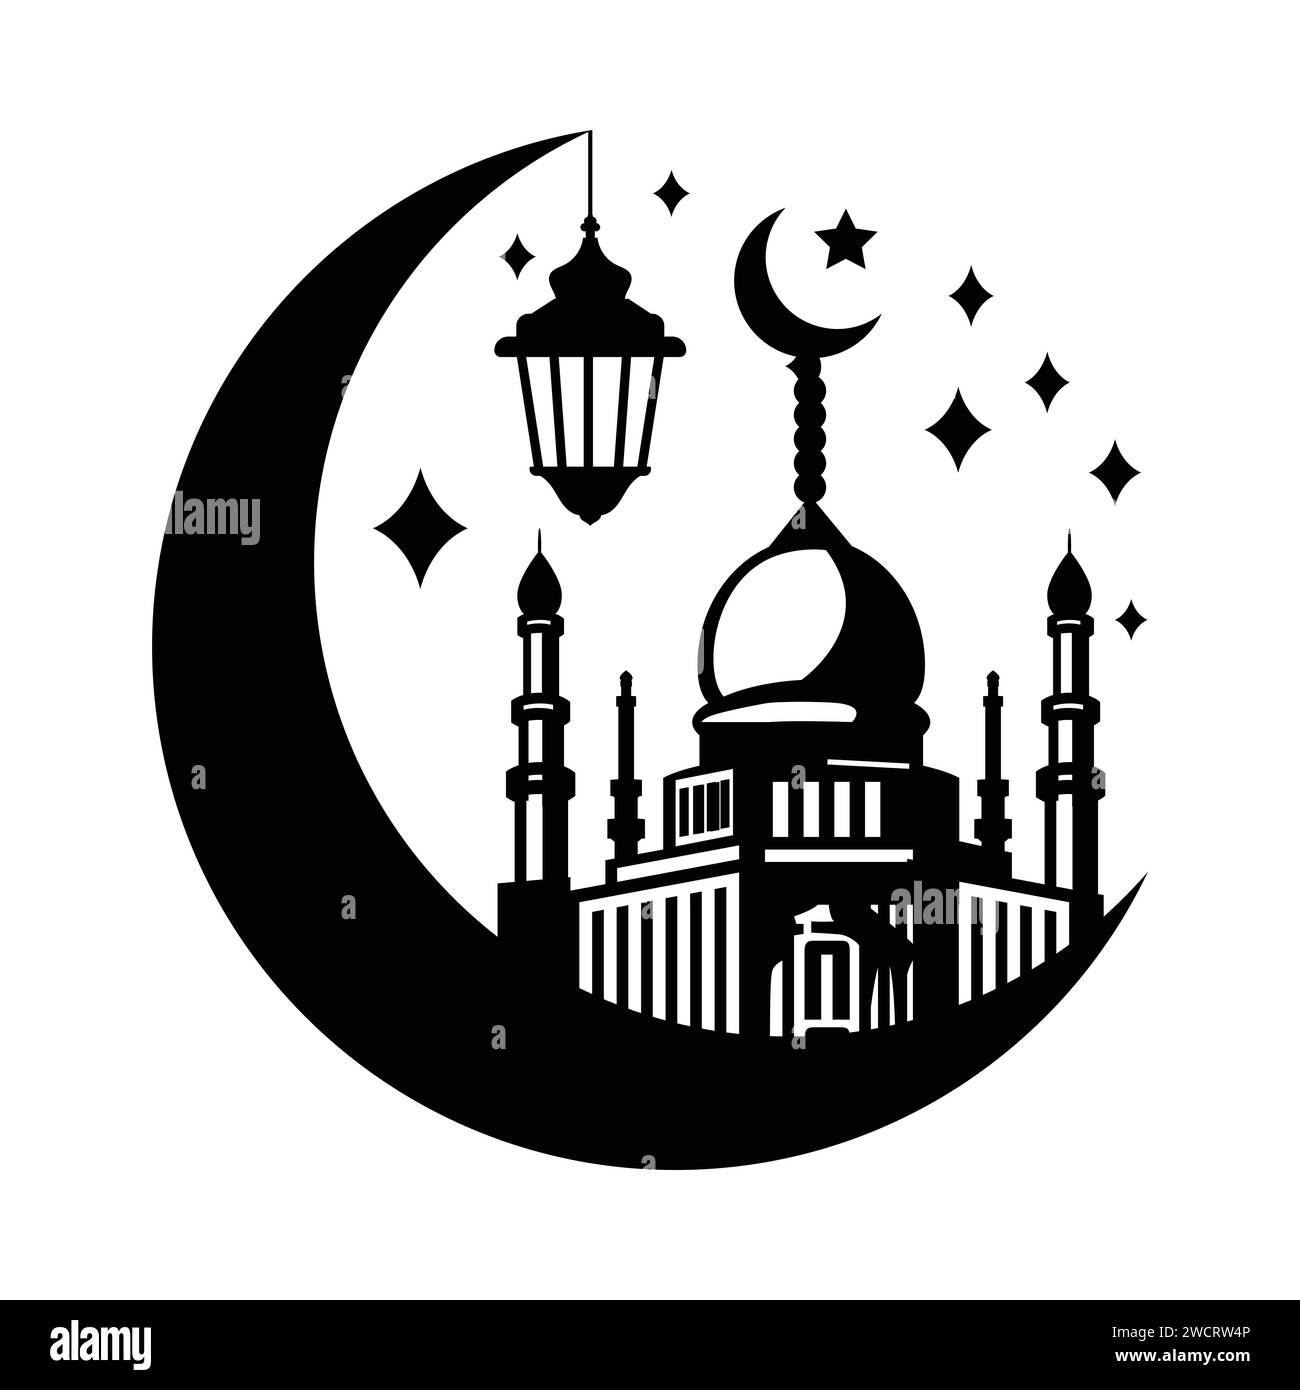 lampe de ramadan dans un style arabe. conception d'illustration de